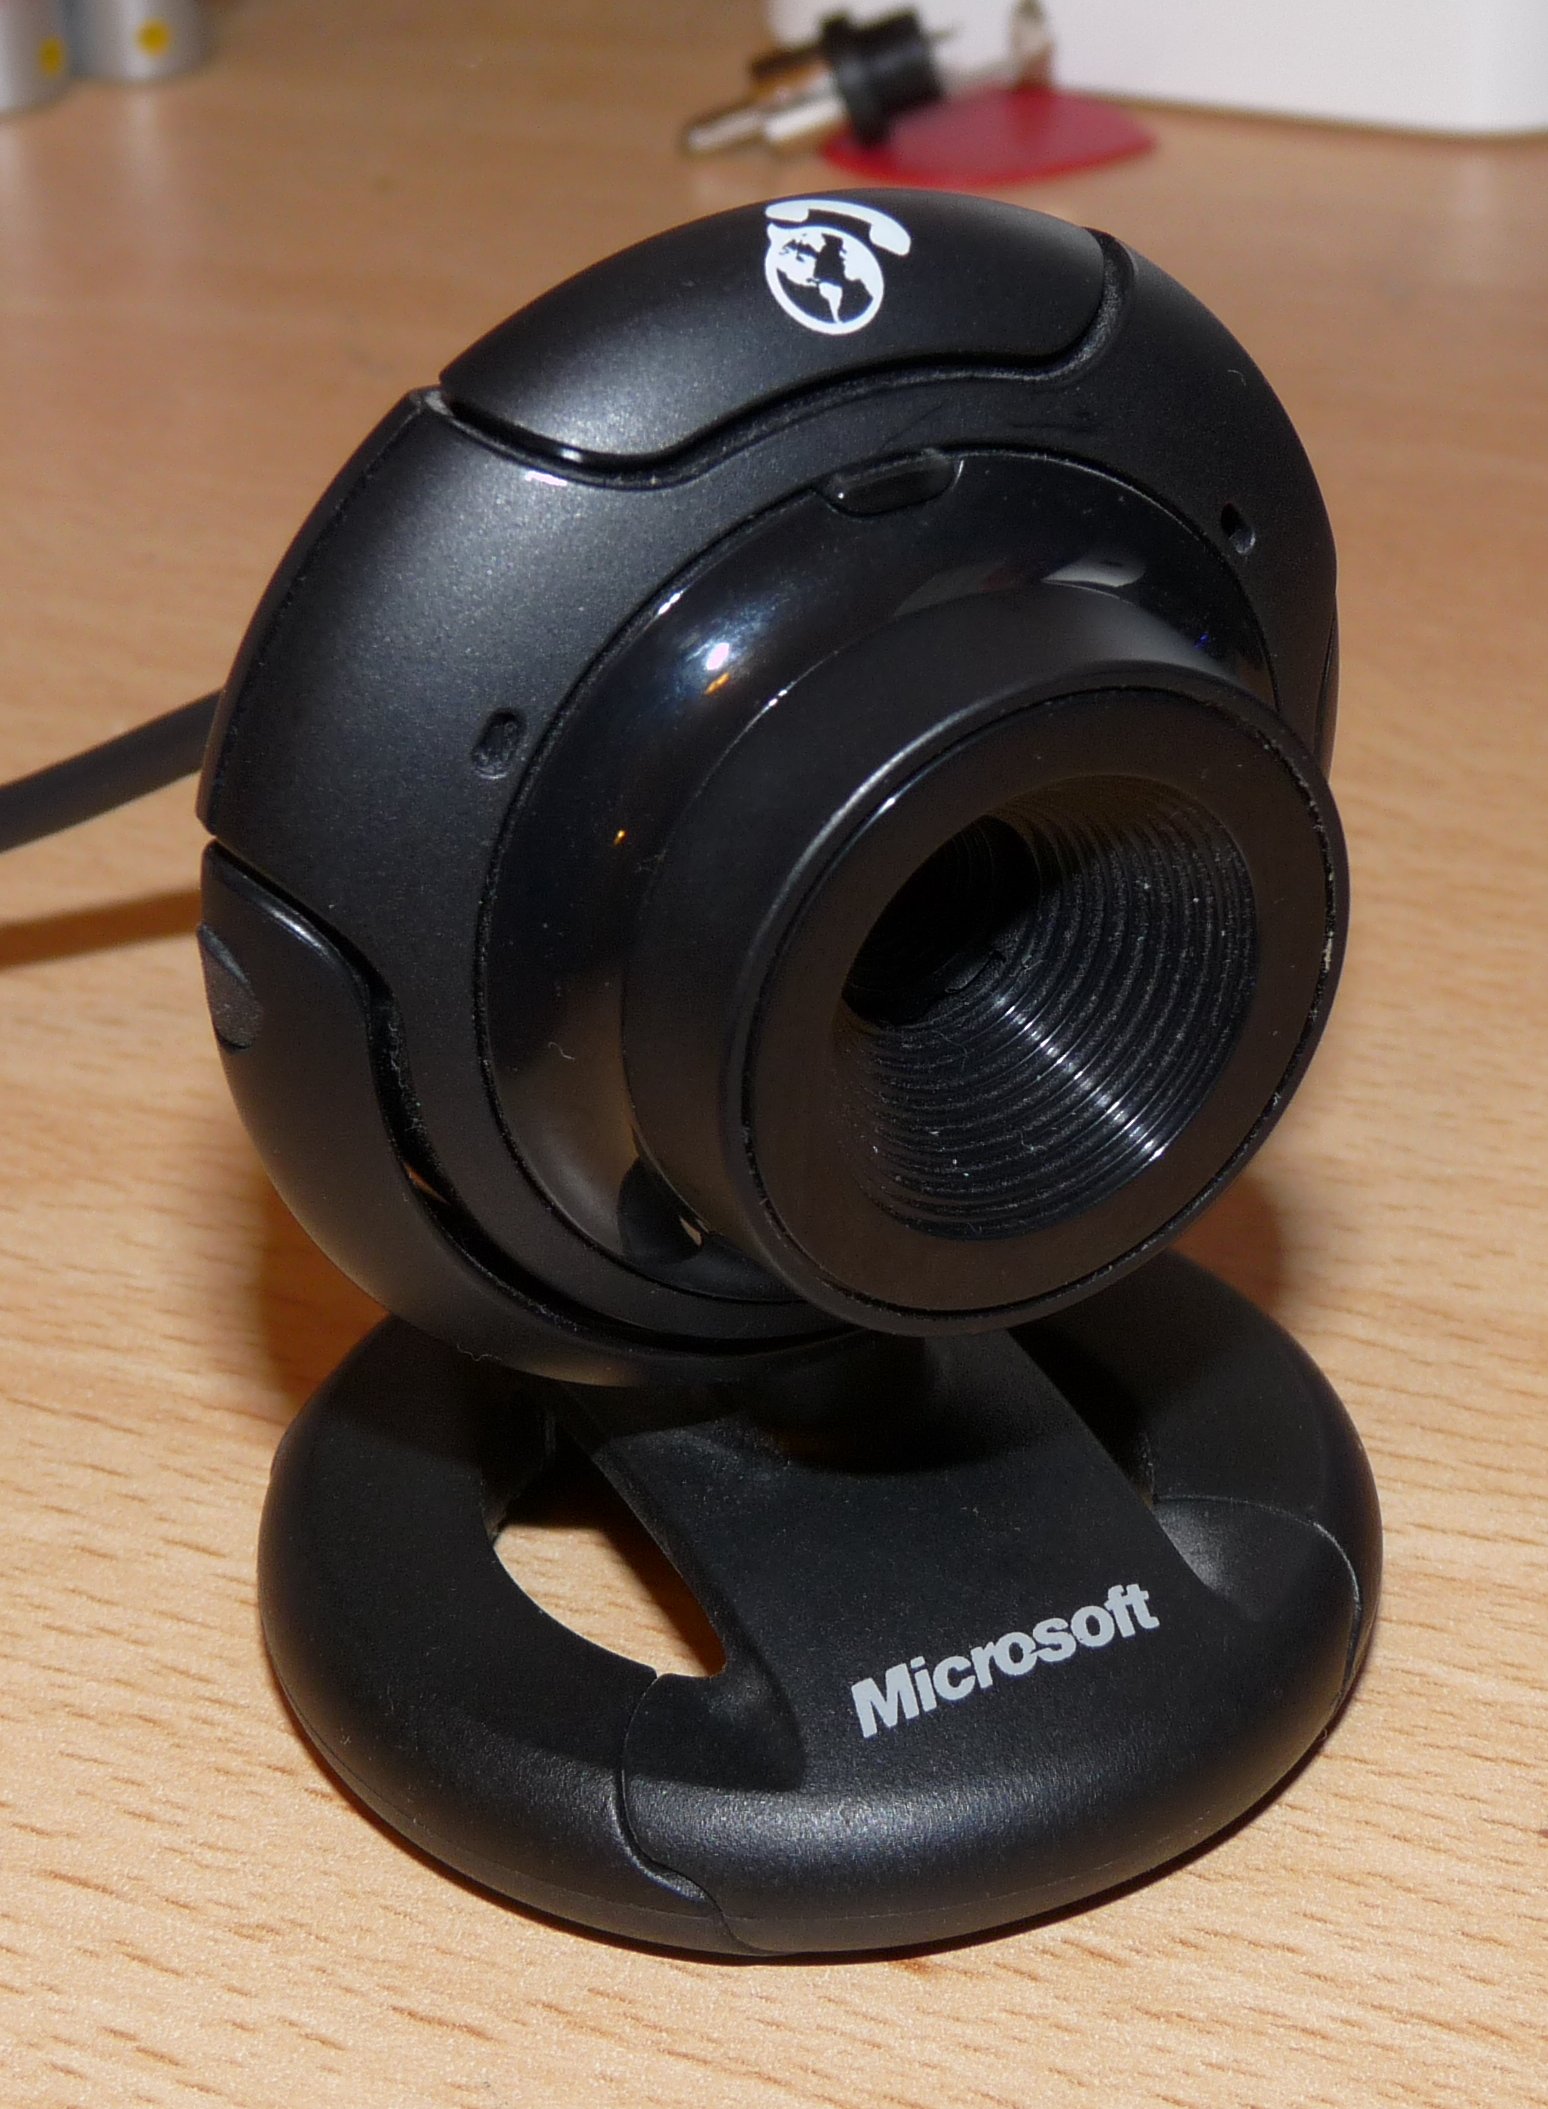 Microsoft lifecam vx 1000 драйвера скачать бесплатно